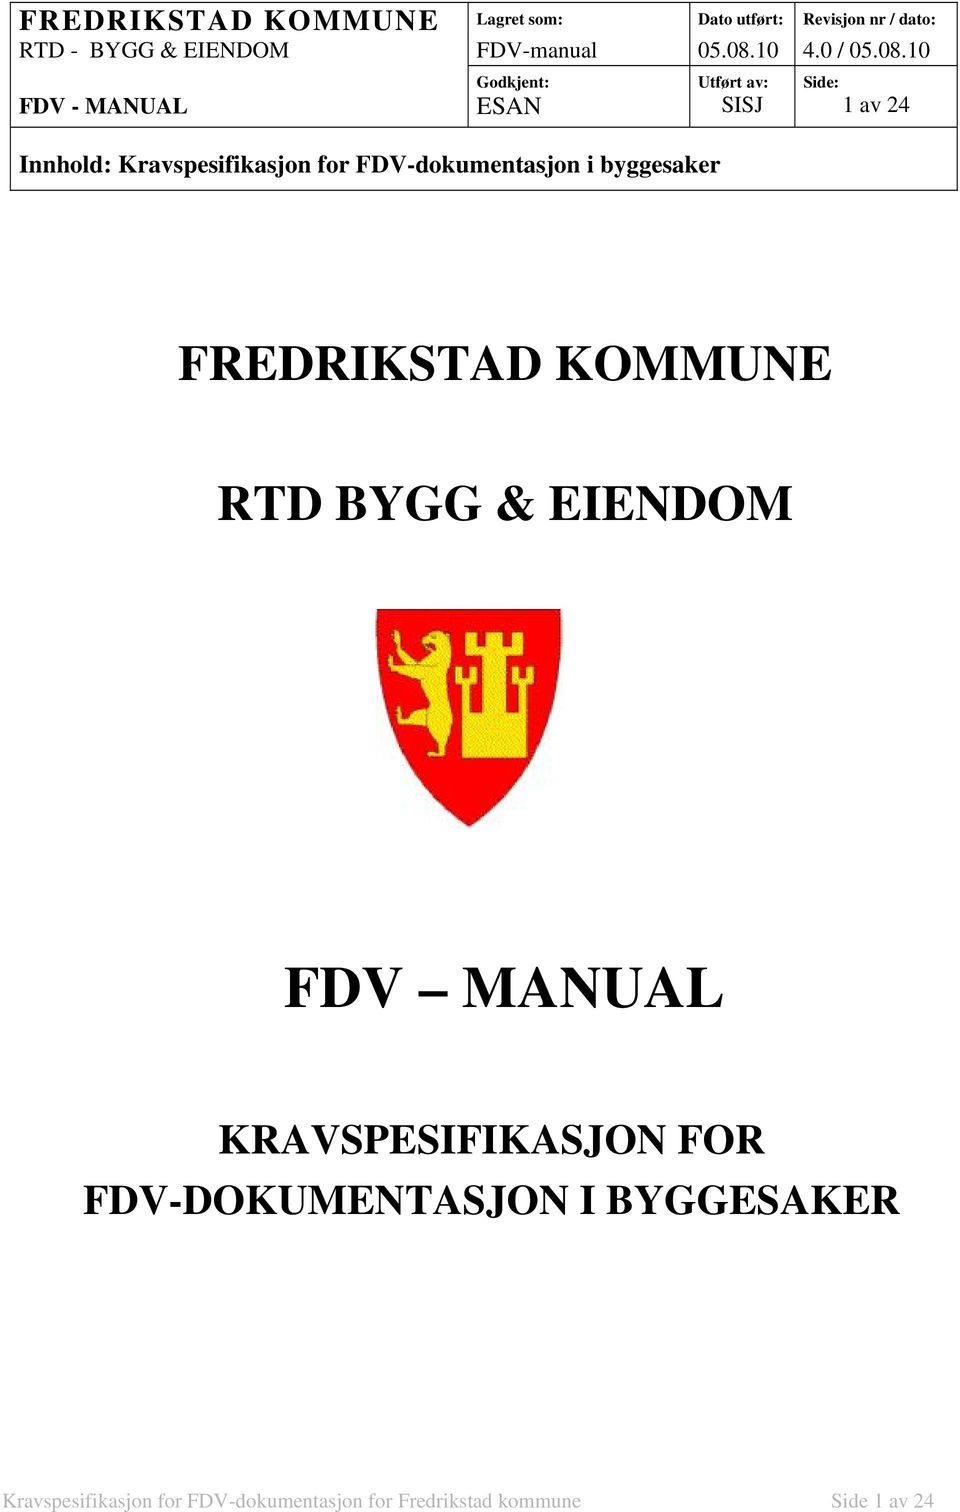 10 FDV - MANUAL Godkjent: ESAN Innhold: Kravspesifikasjon for FDV-dokumentasjon i byggesaker Utført av: